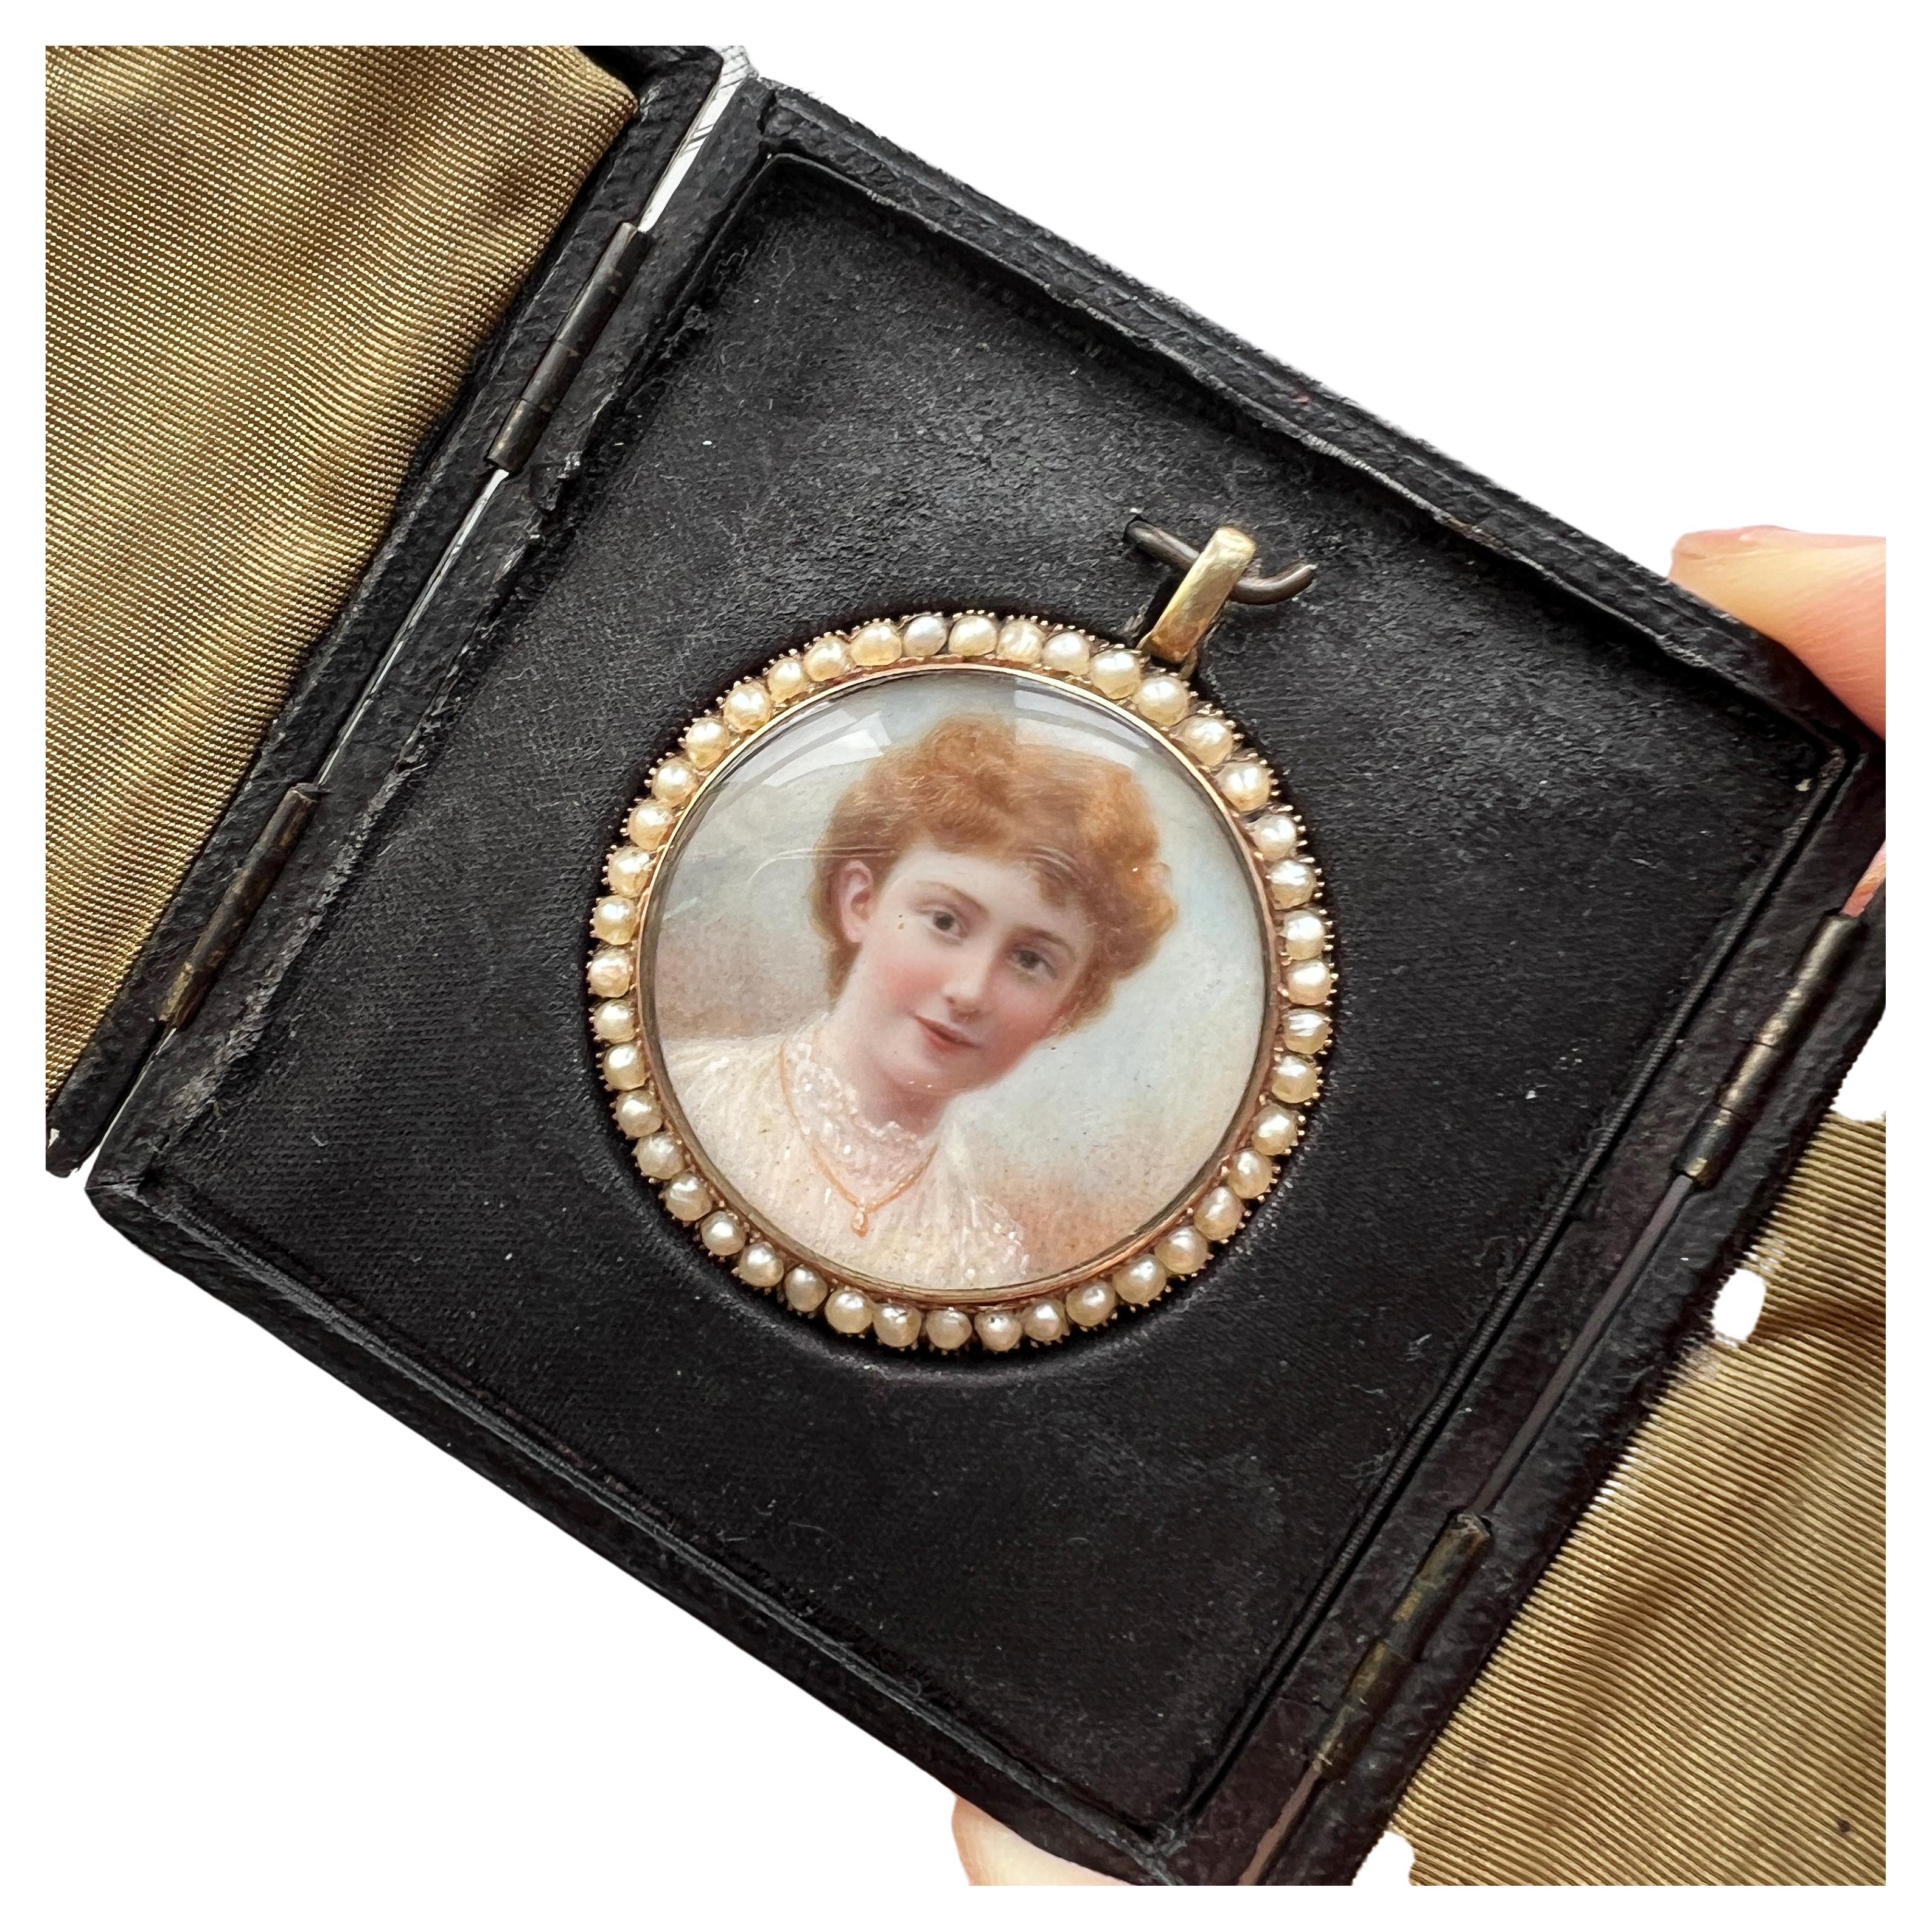 Boxed Victorian era gold pearl miniature portrait pendant